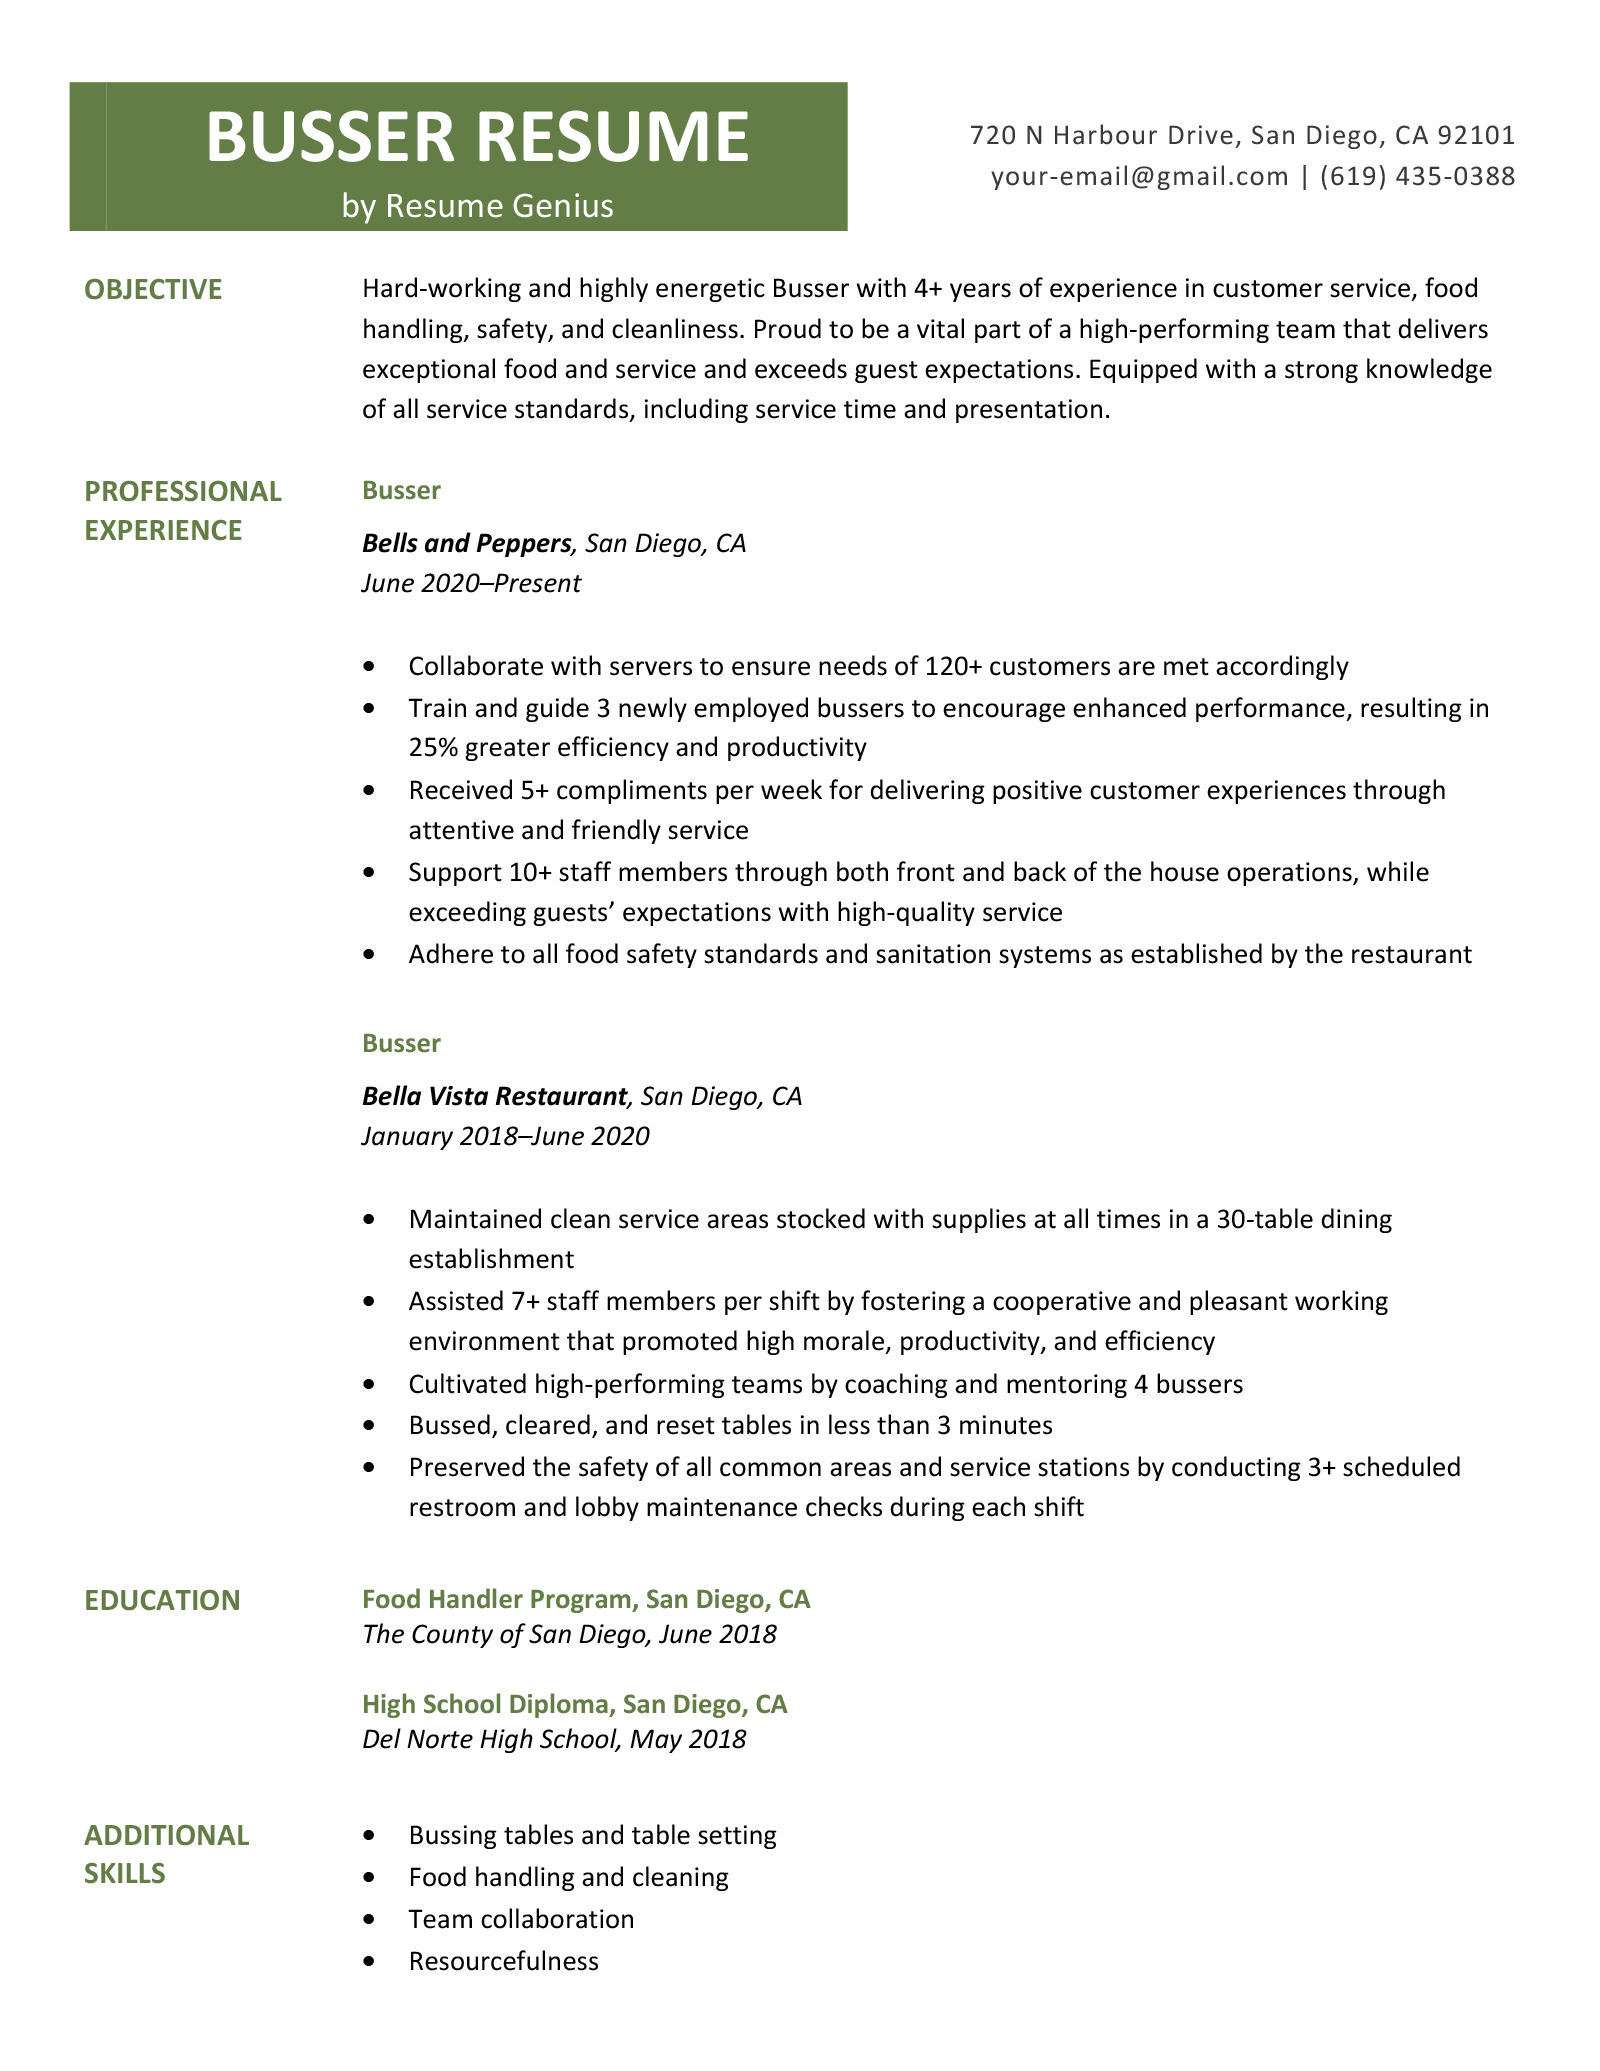 A busser resume sample